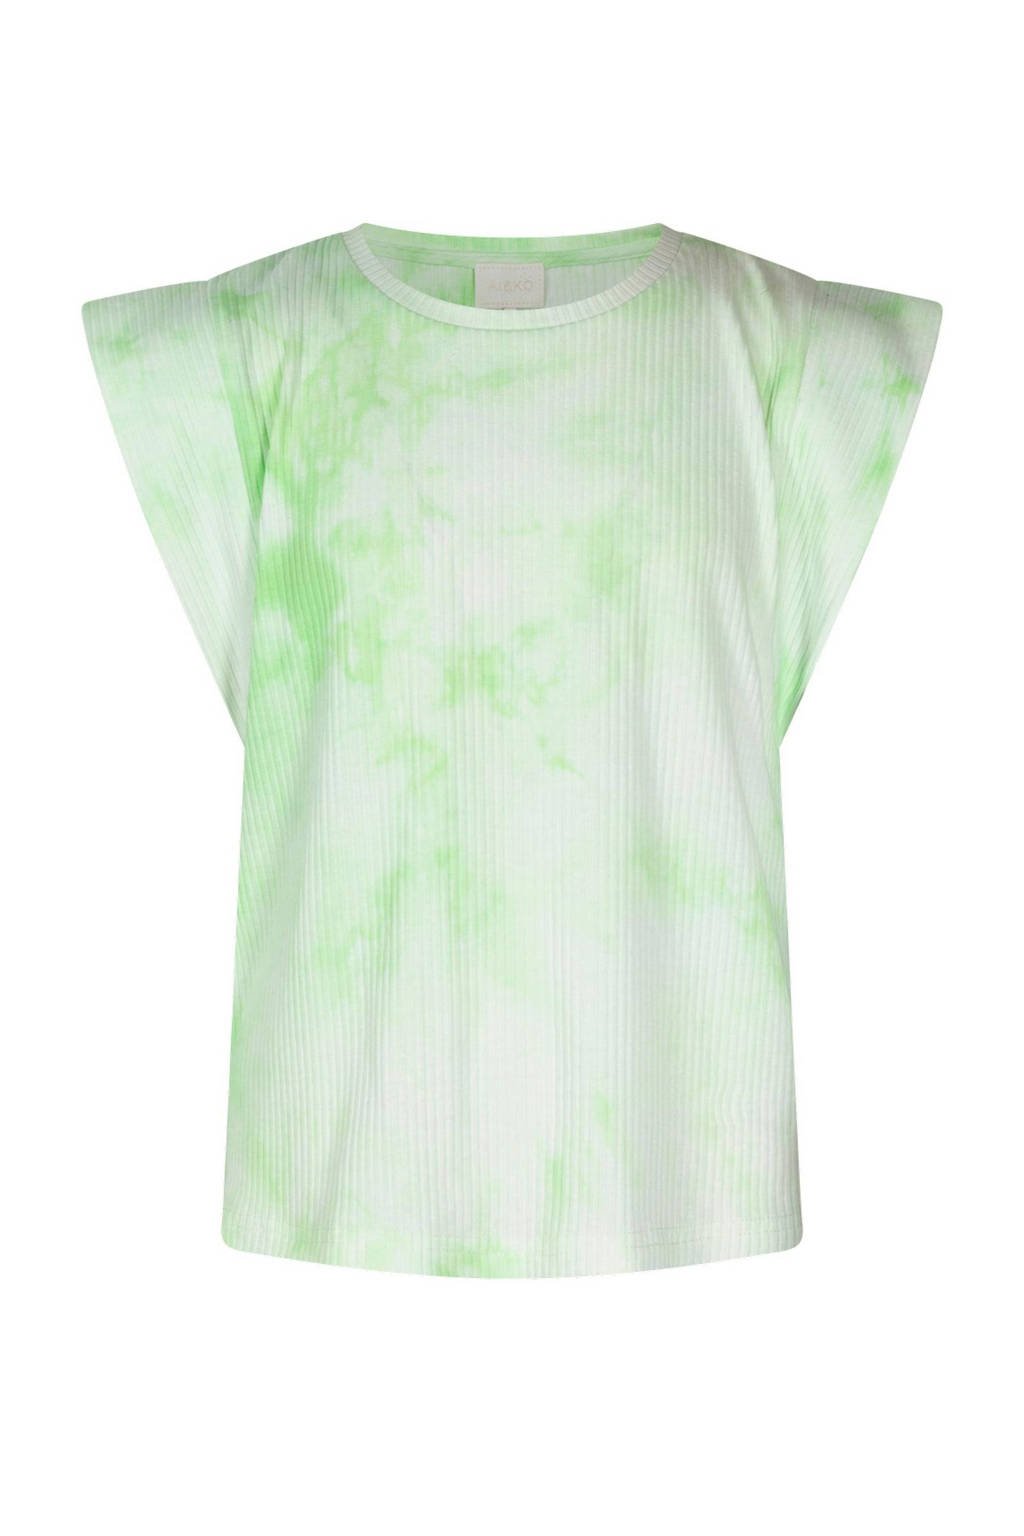 tie-dye T-shirt Cora groen/wit